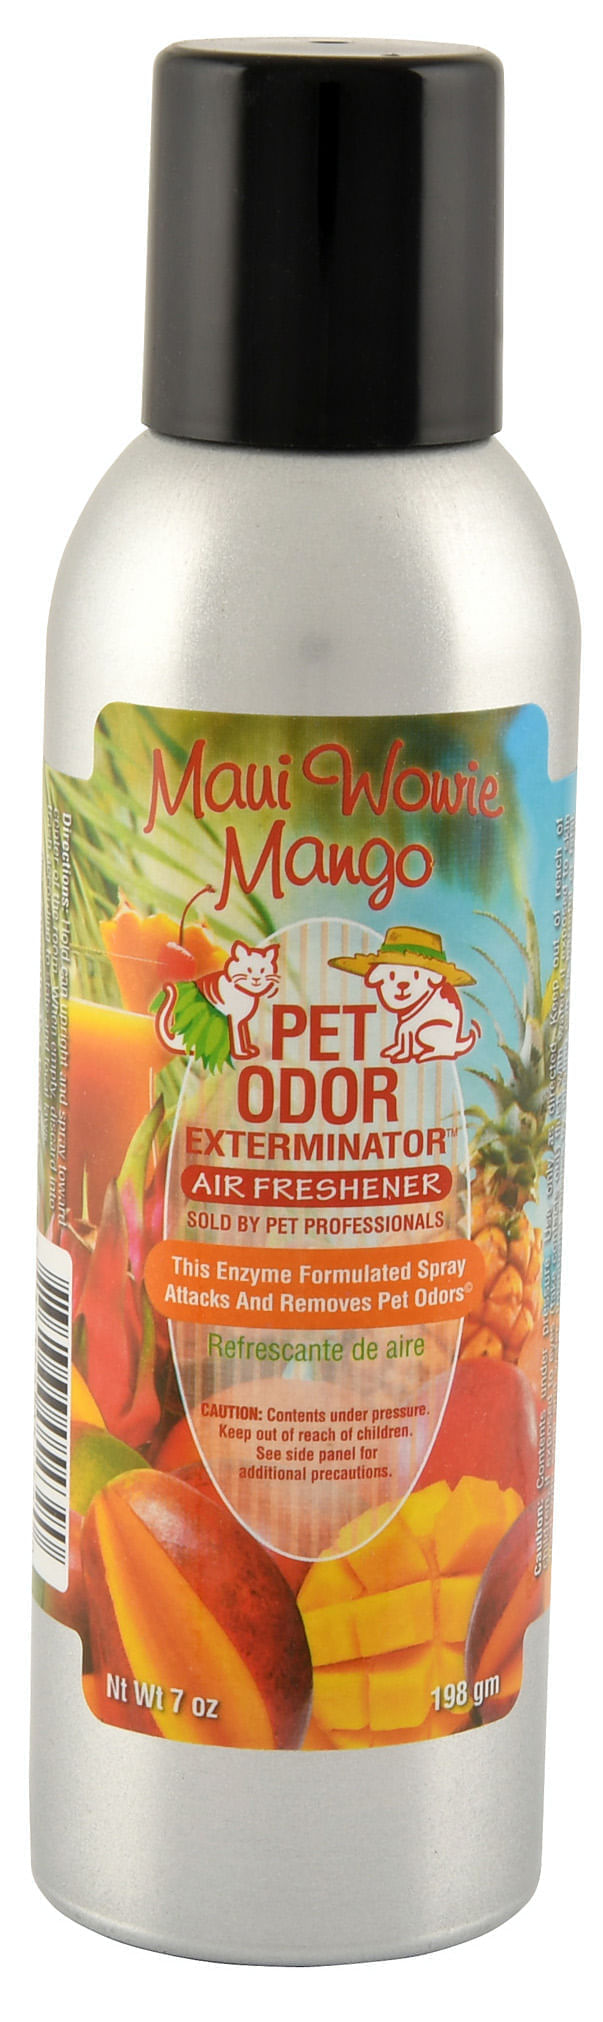 Pet-Odor-Exterminator-Spray-Maui-Wowie-Mango